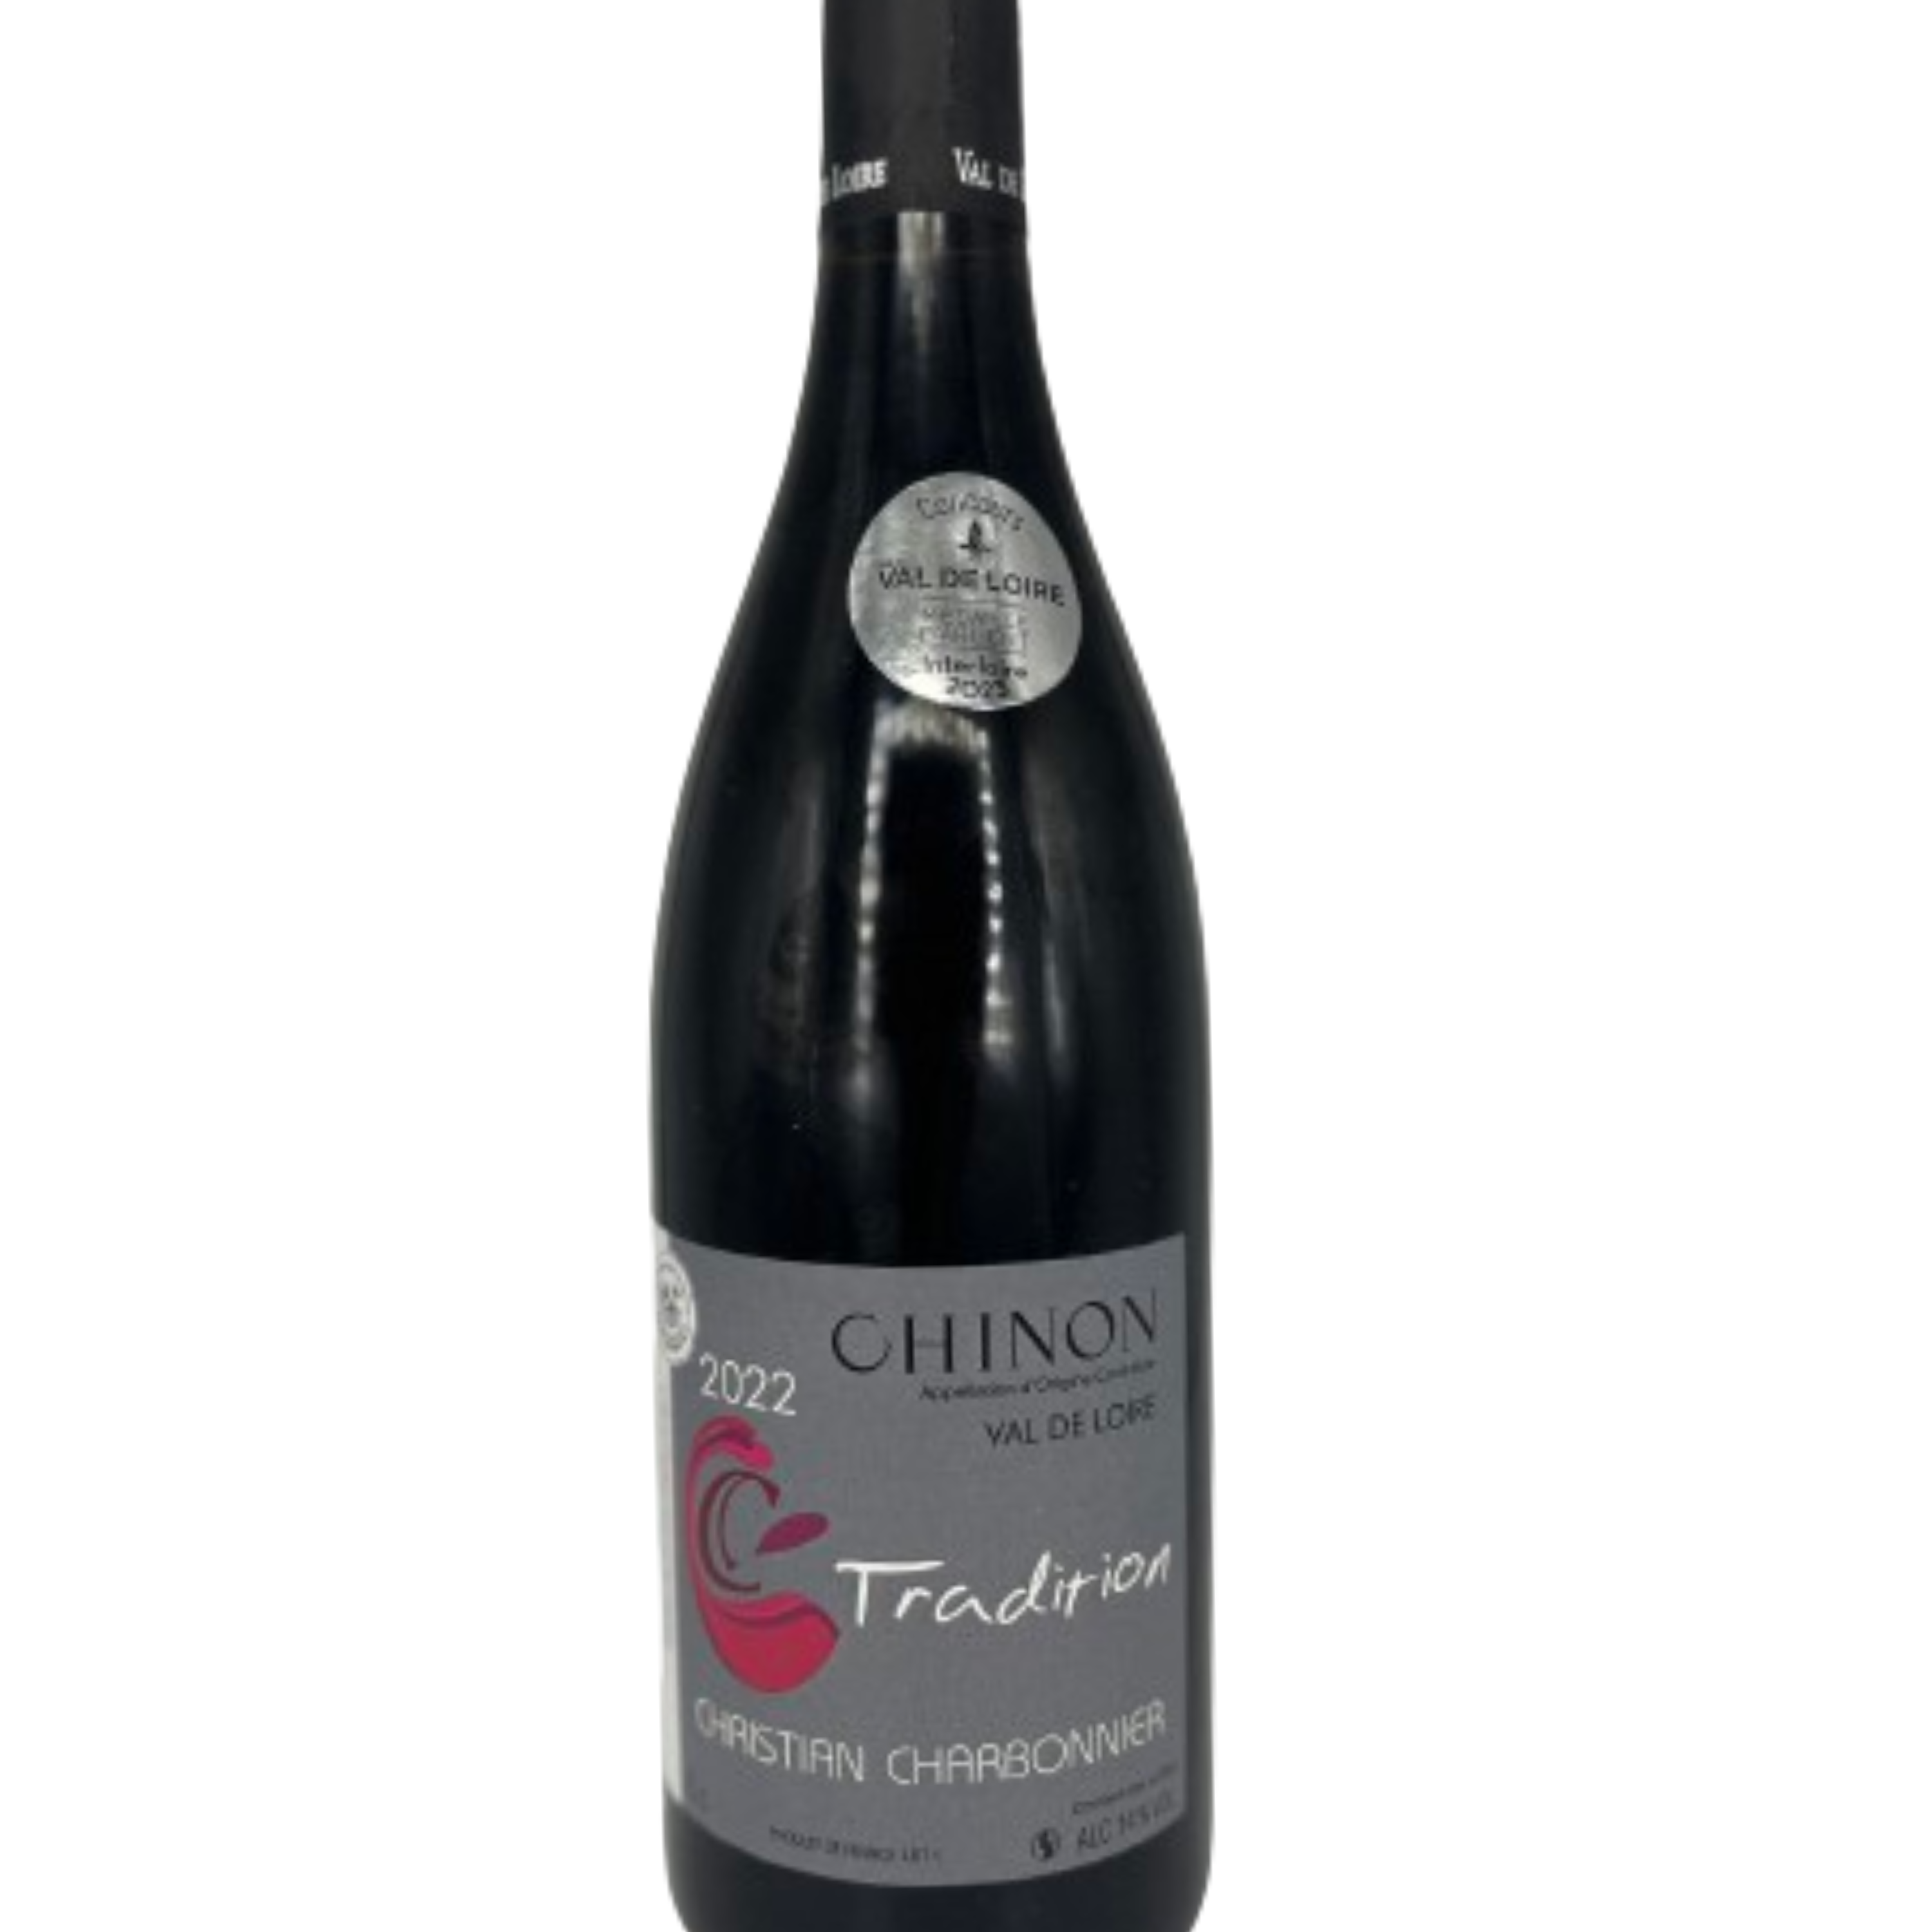 Bouteille de vin rouge - Chinon - par Christian Charbonnier et sa cuvée tradition - 1020 Dégustations